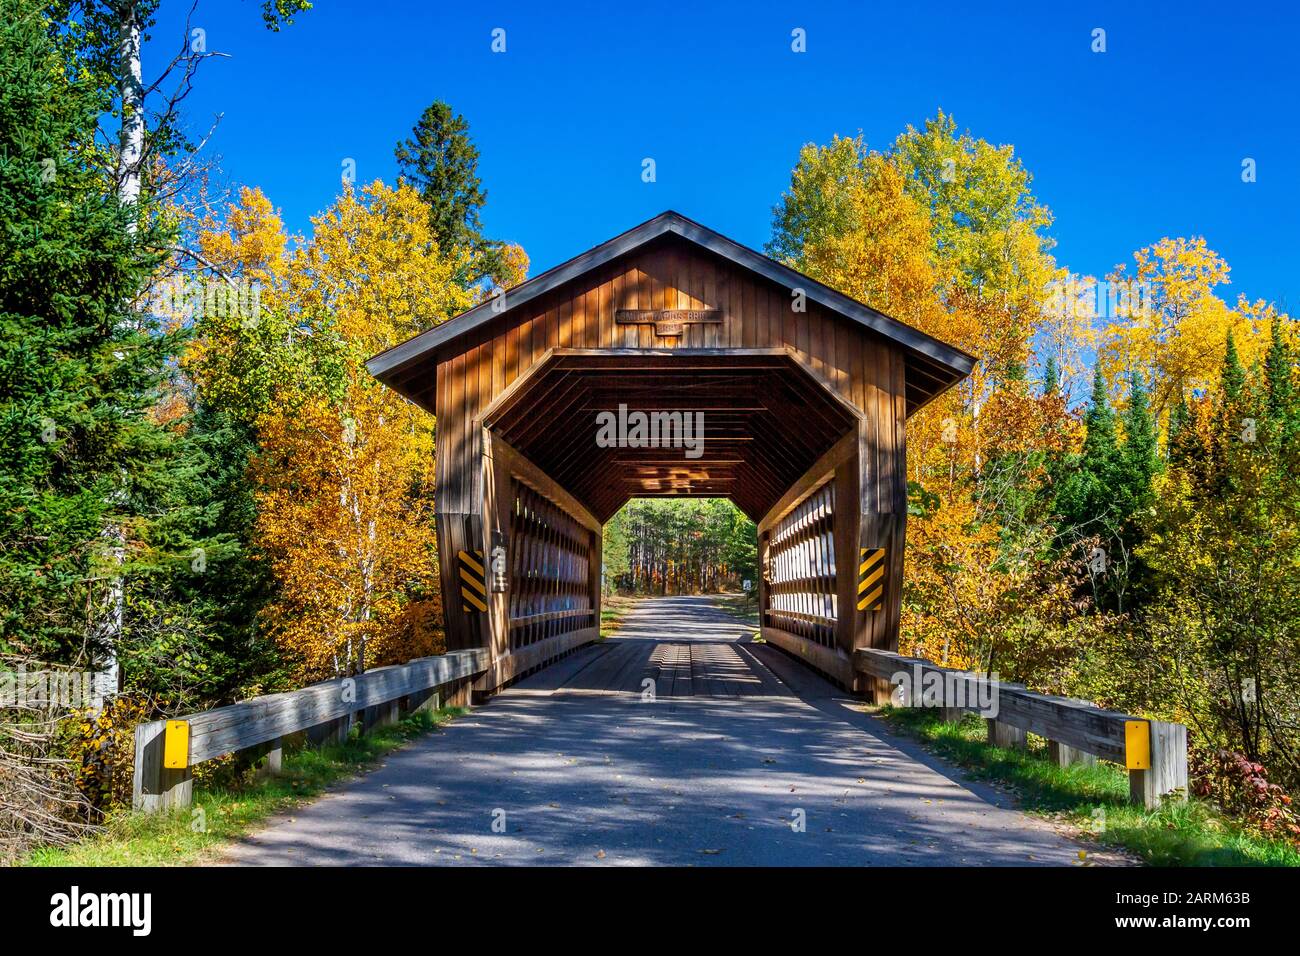 Le pont Couvert de Smith Rapids dans la forêt nationale de Chequamegon - Nicolet près de Minocqua, Wisconsin, États-Unis. Banque D'Images